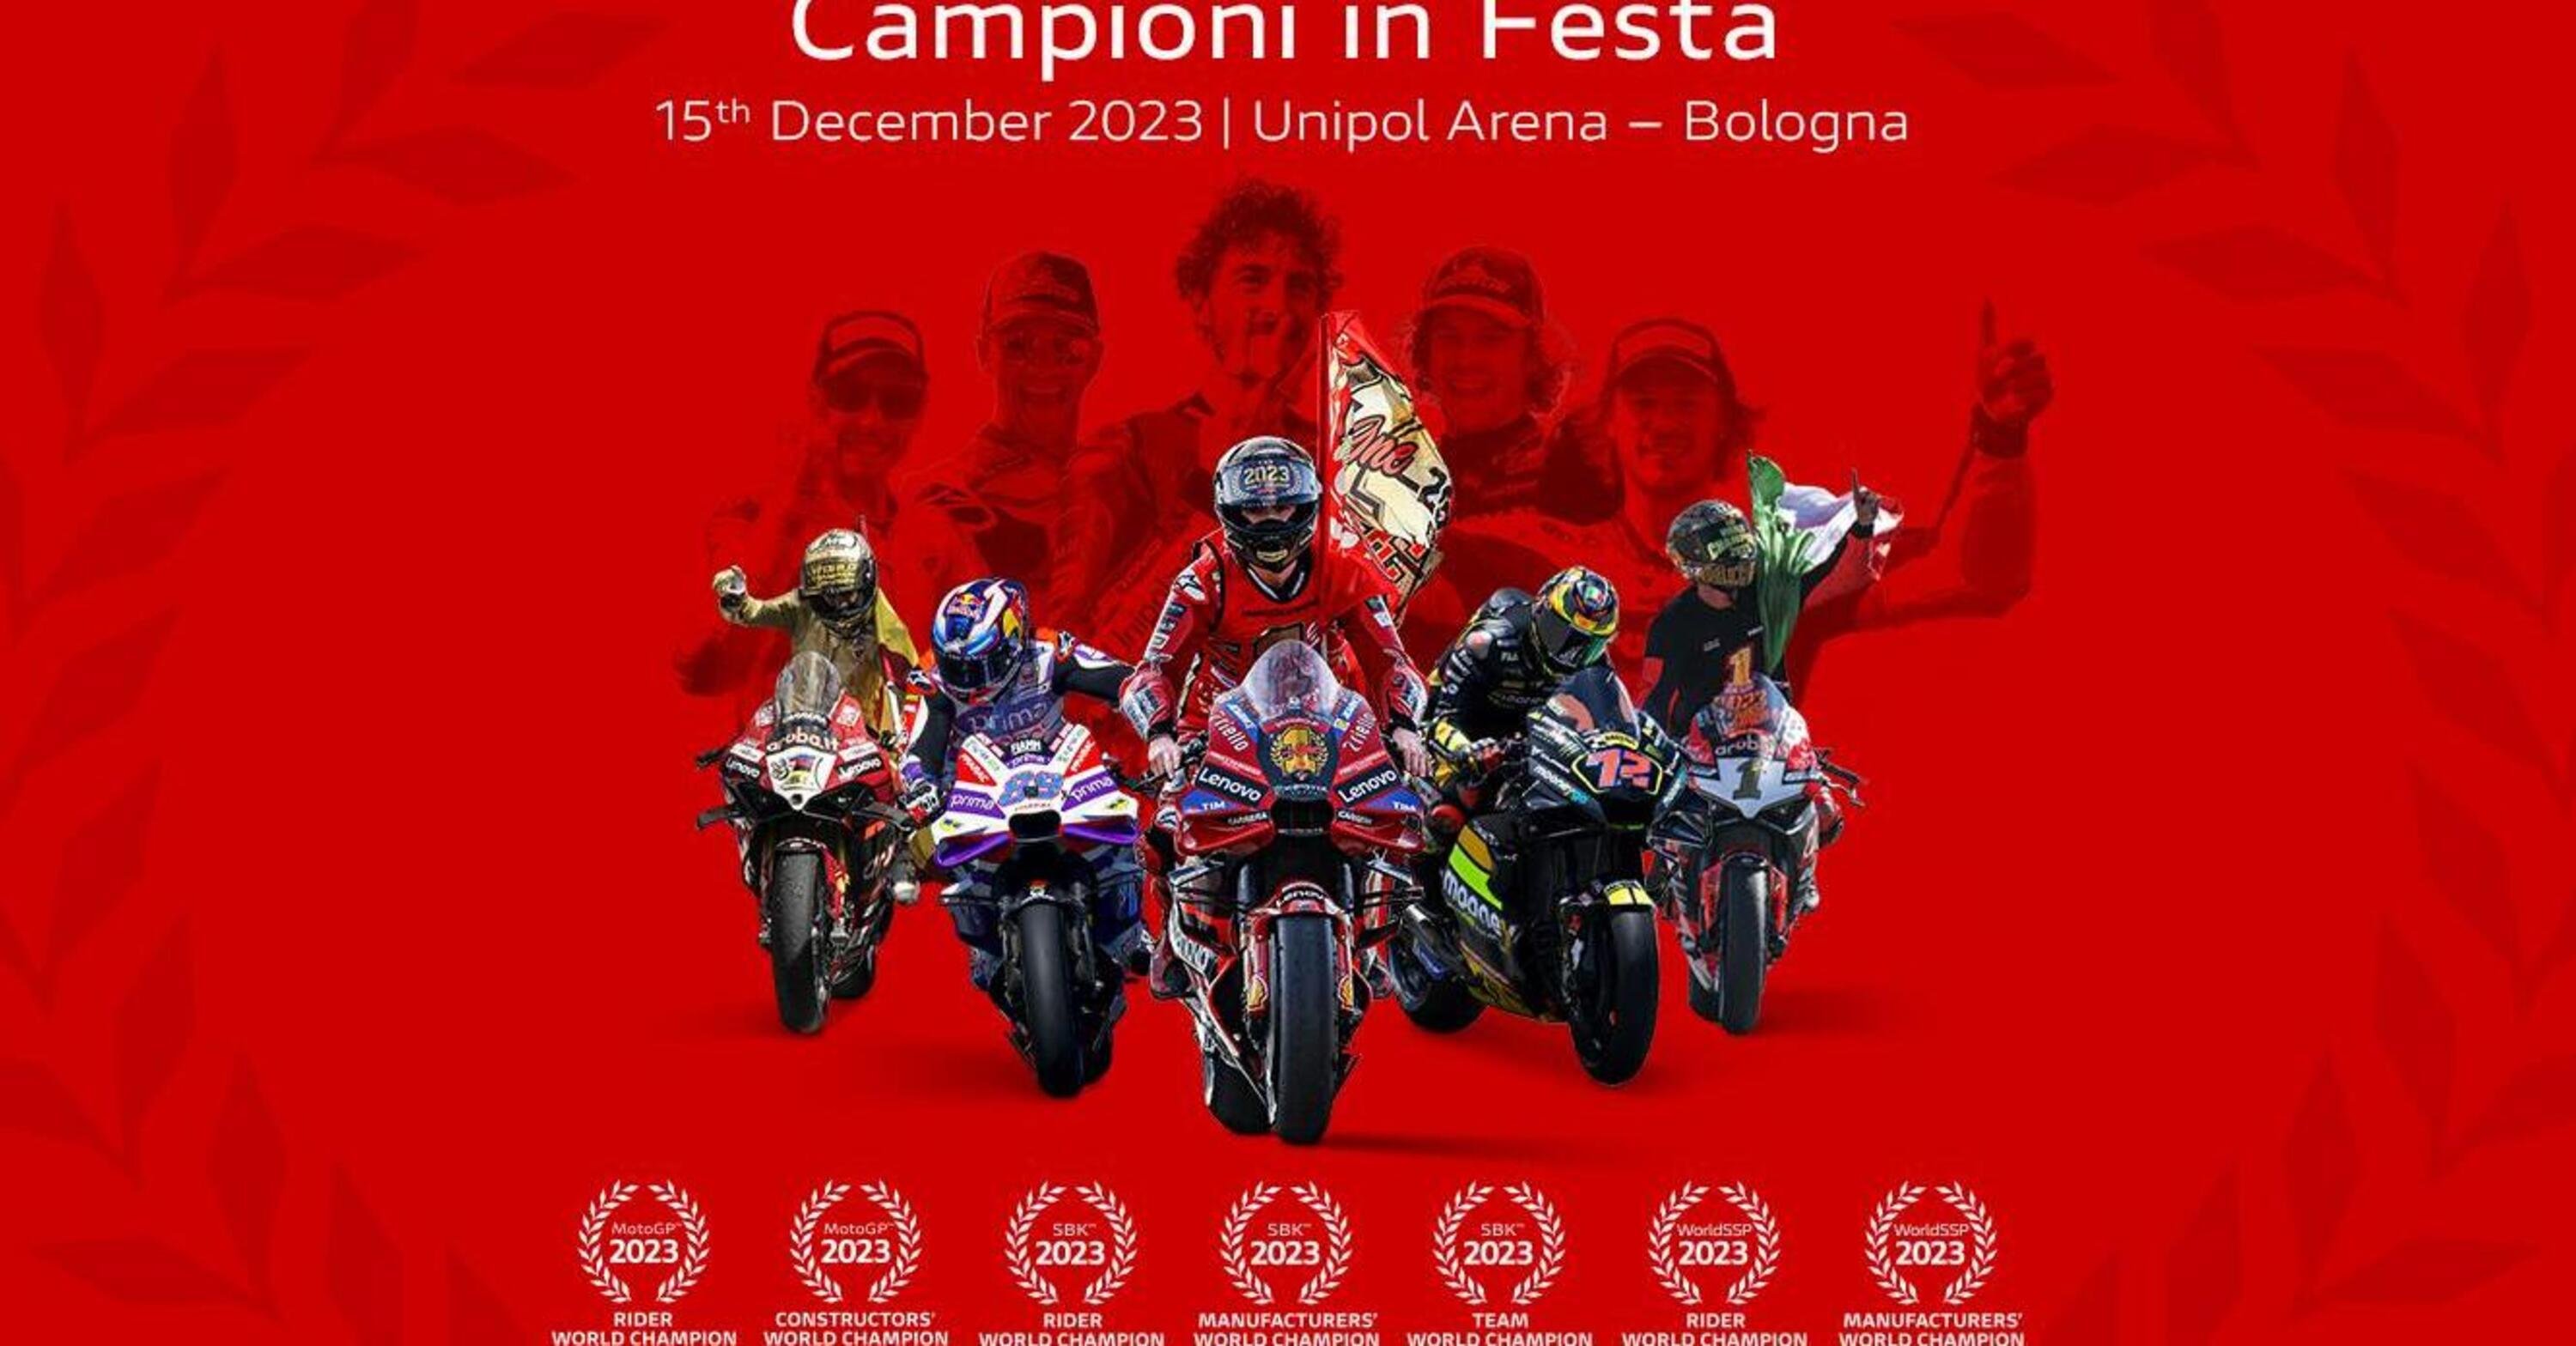 MotoGP 2023. La festa per i campioni Ducati &egrave; aperta a tutti: venerd&igrave; 15 dicembre a Bologna!